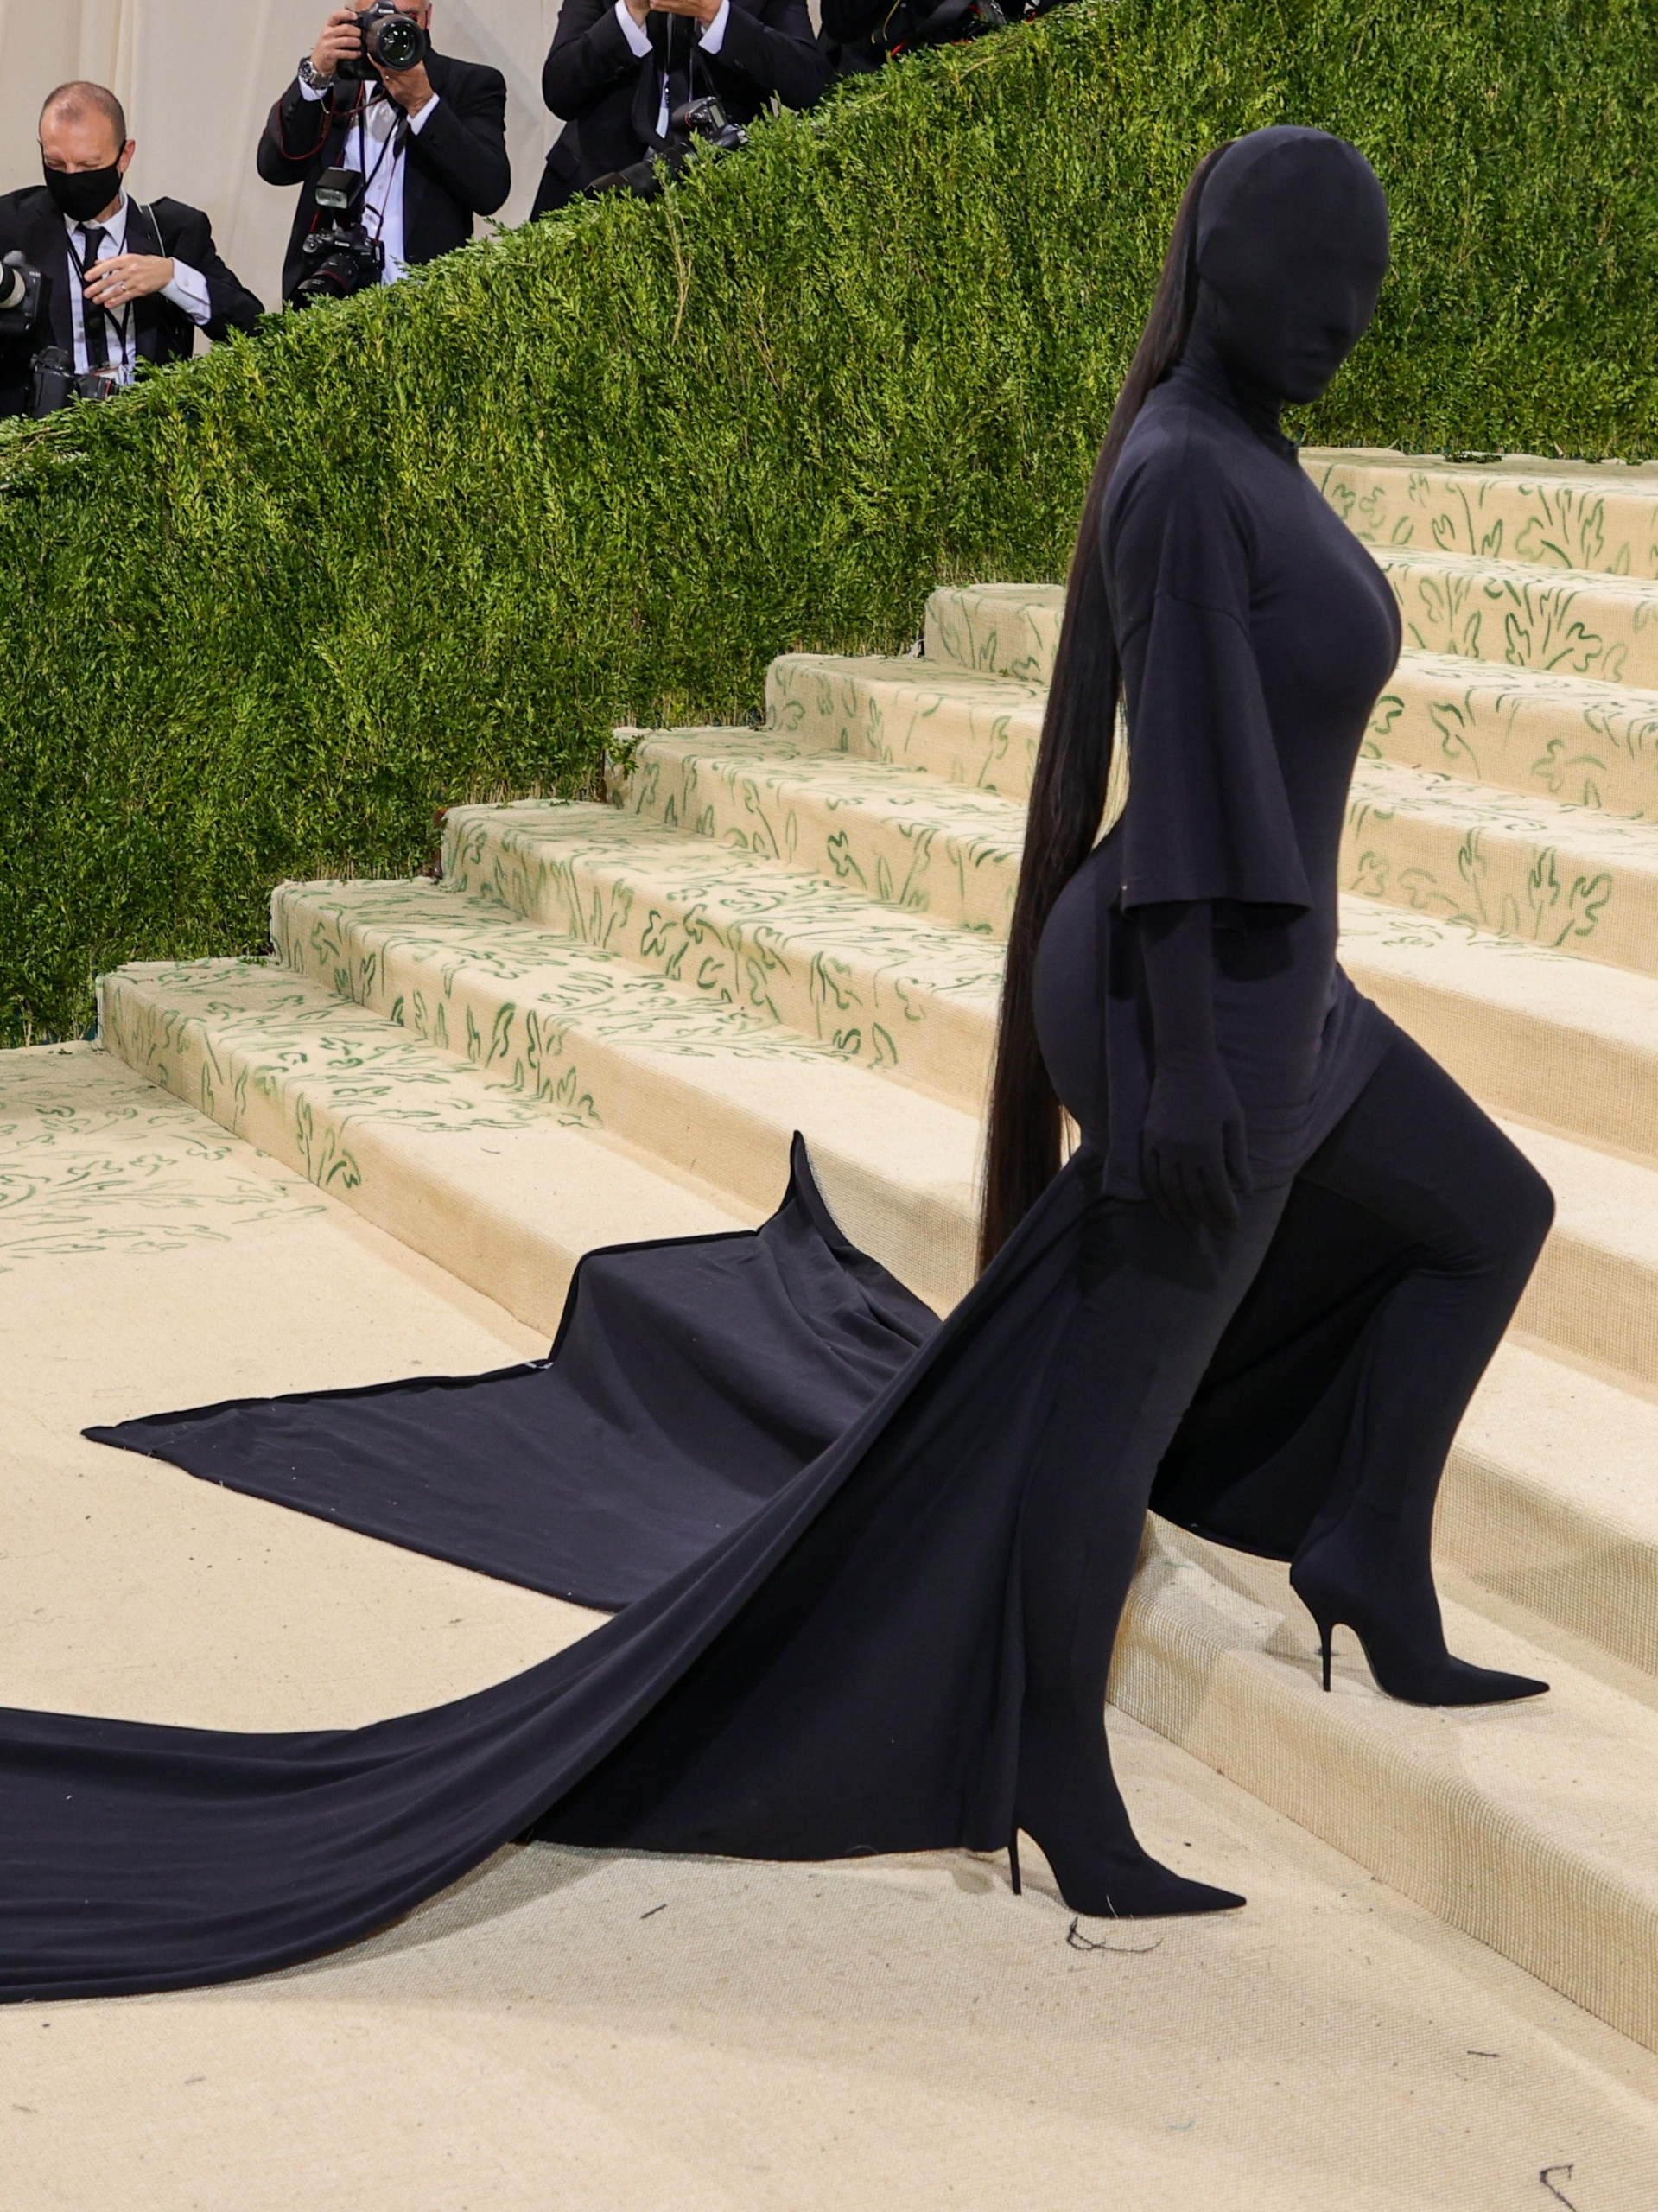 Kim Kardashian từng khiến người xem tò mò khi diện cả set đồ kín bưng từ trên xuống dưới, thách thức paparazzi tại Met Gala 2021.